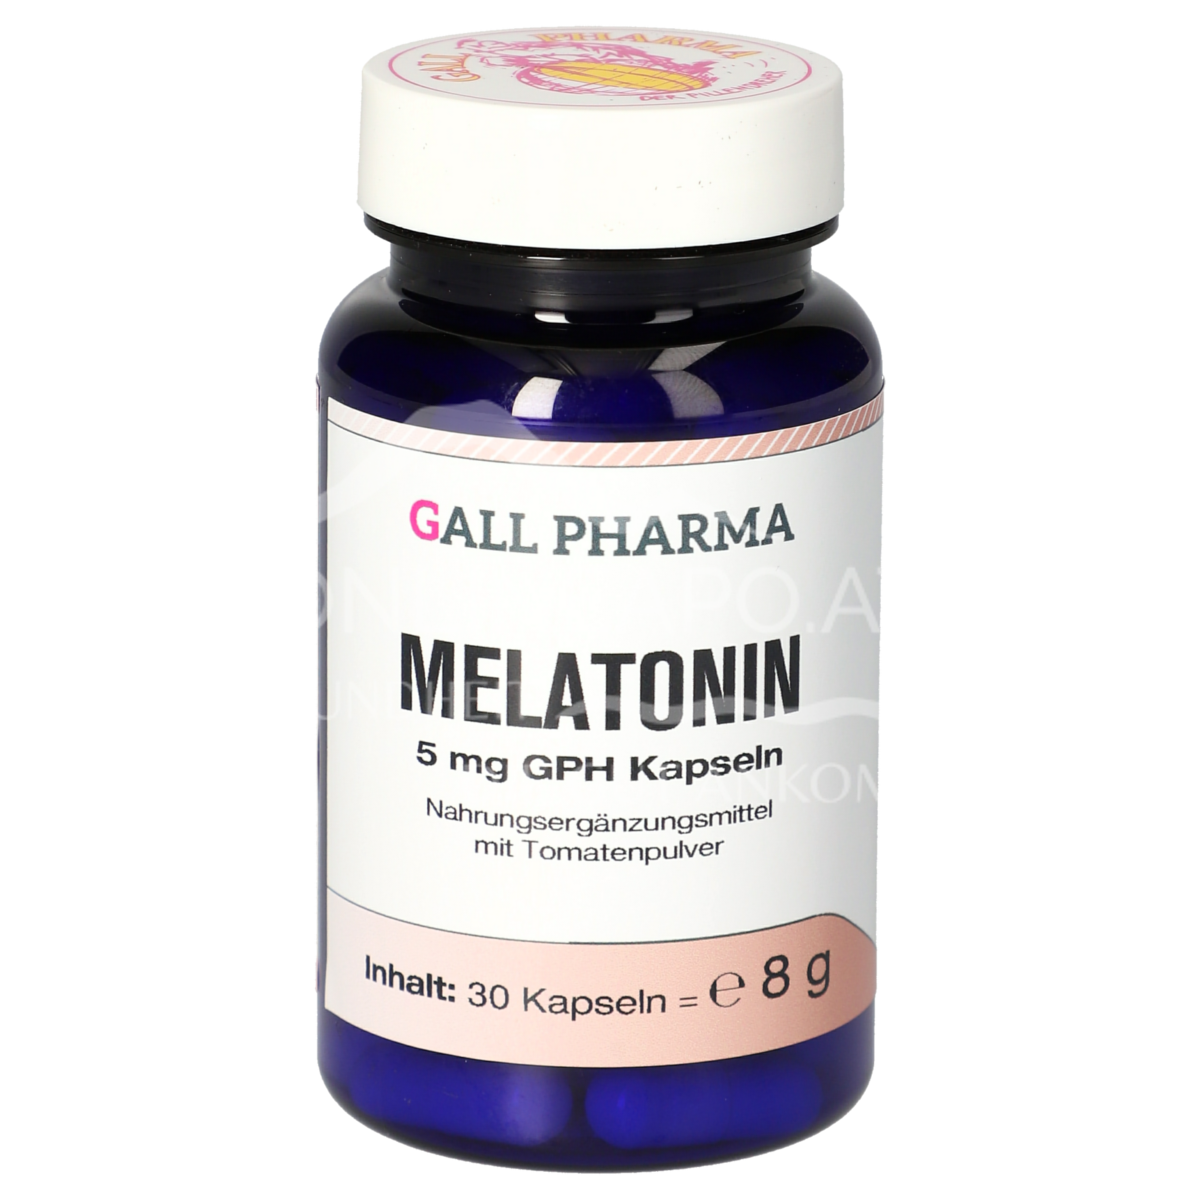 Gall Pharma Melatonin 5 mg Kapseln